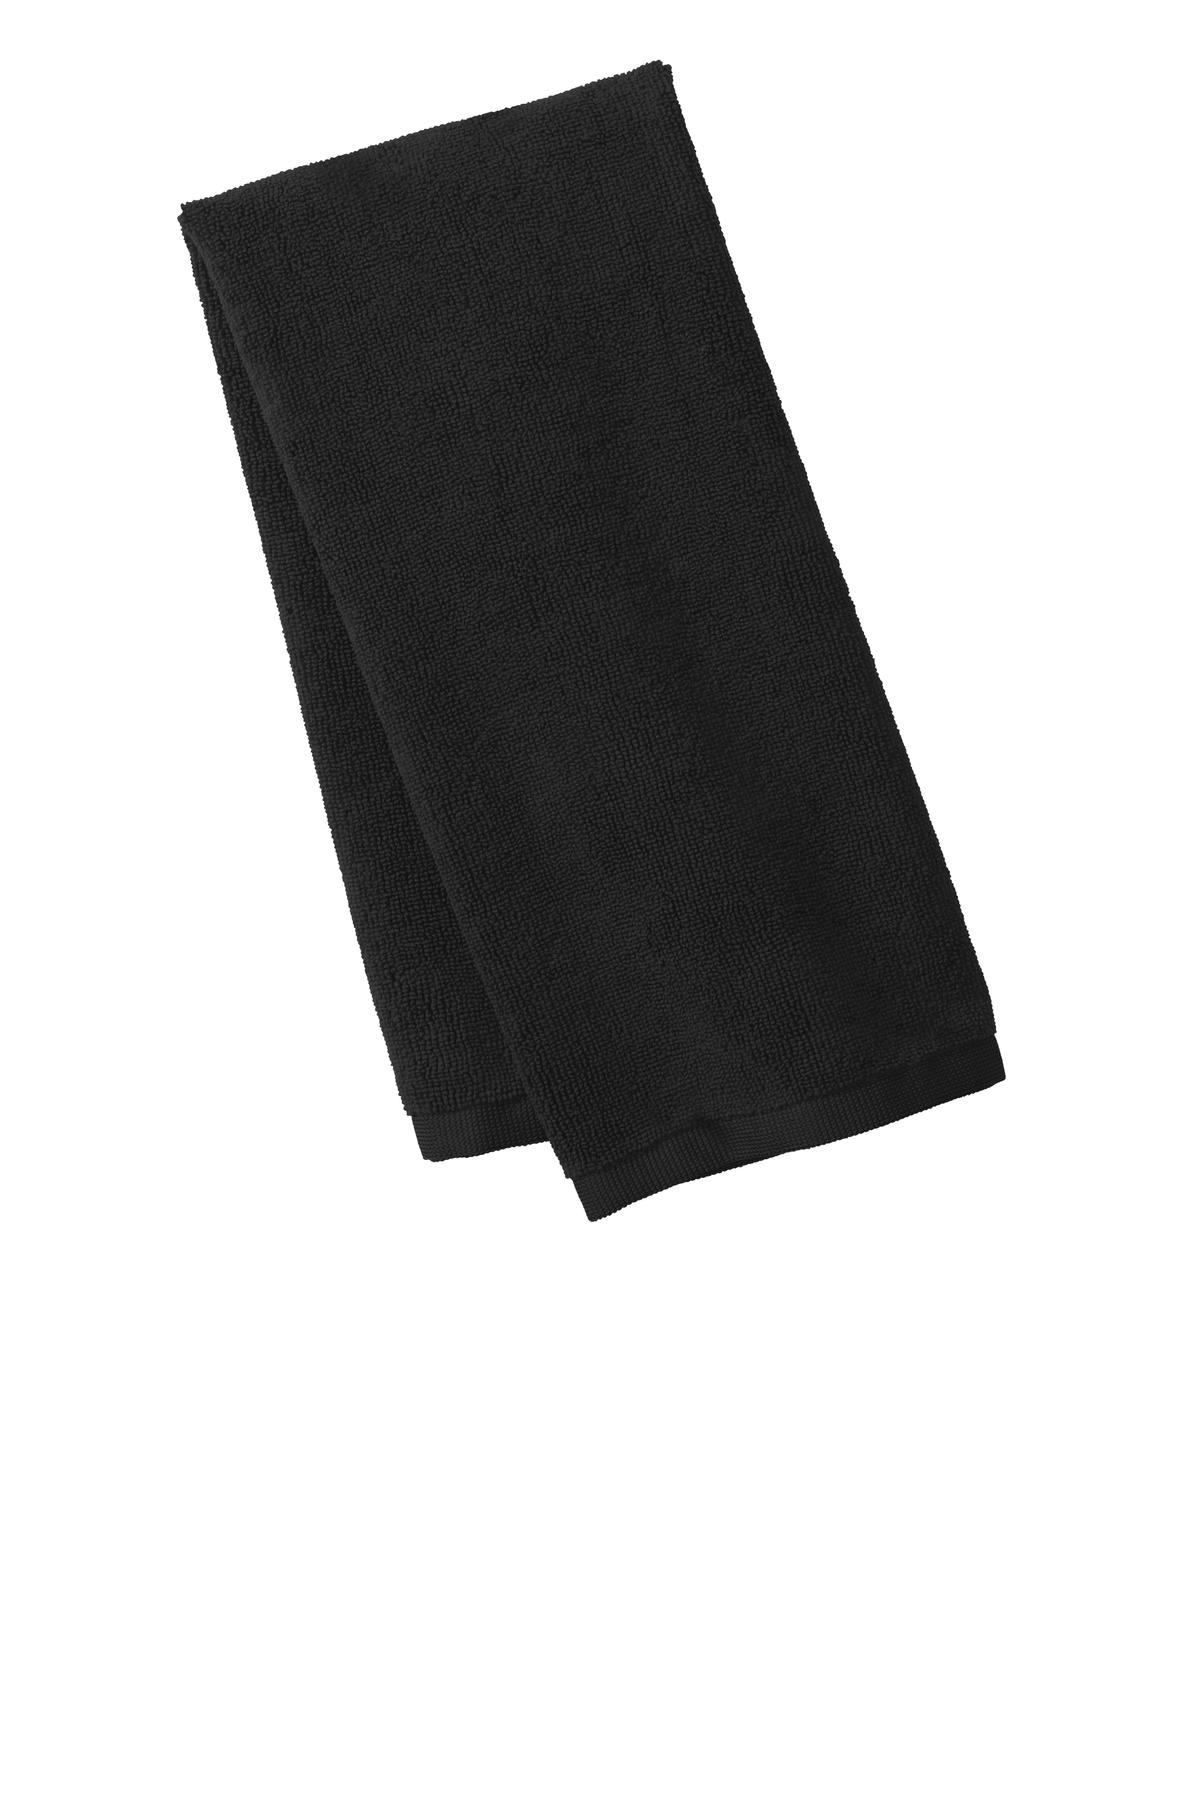 Port Authority Microfiber Golf Towel - TW540